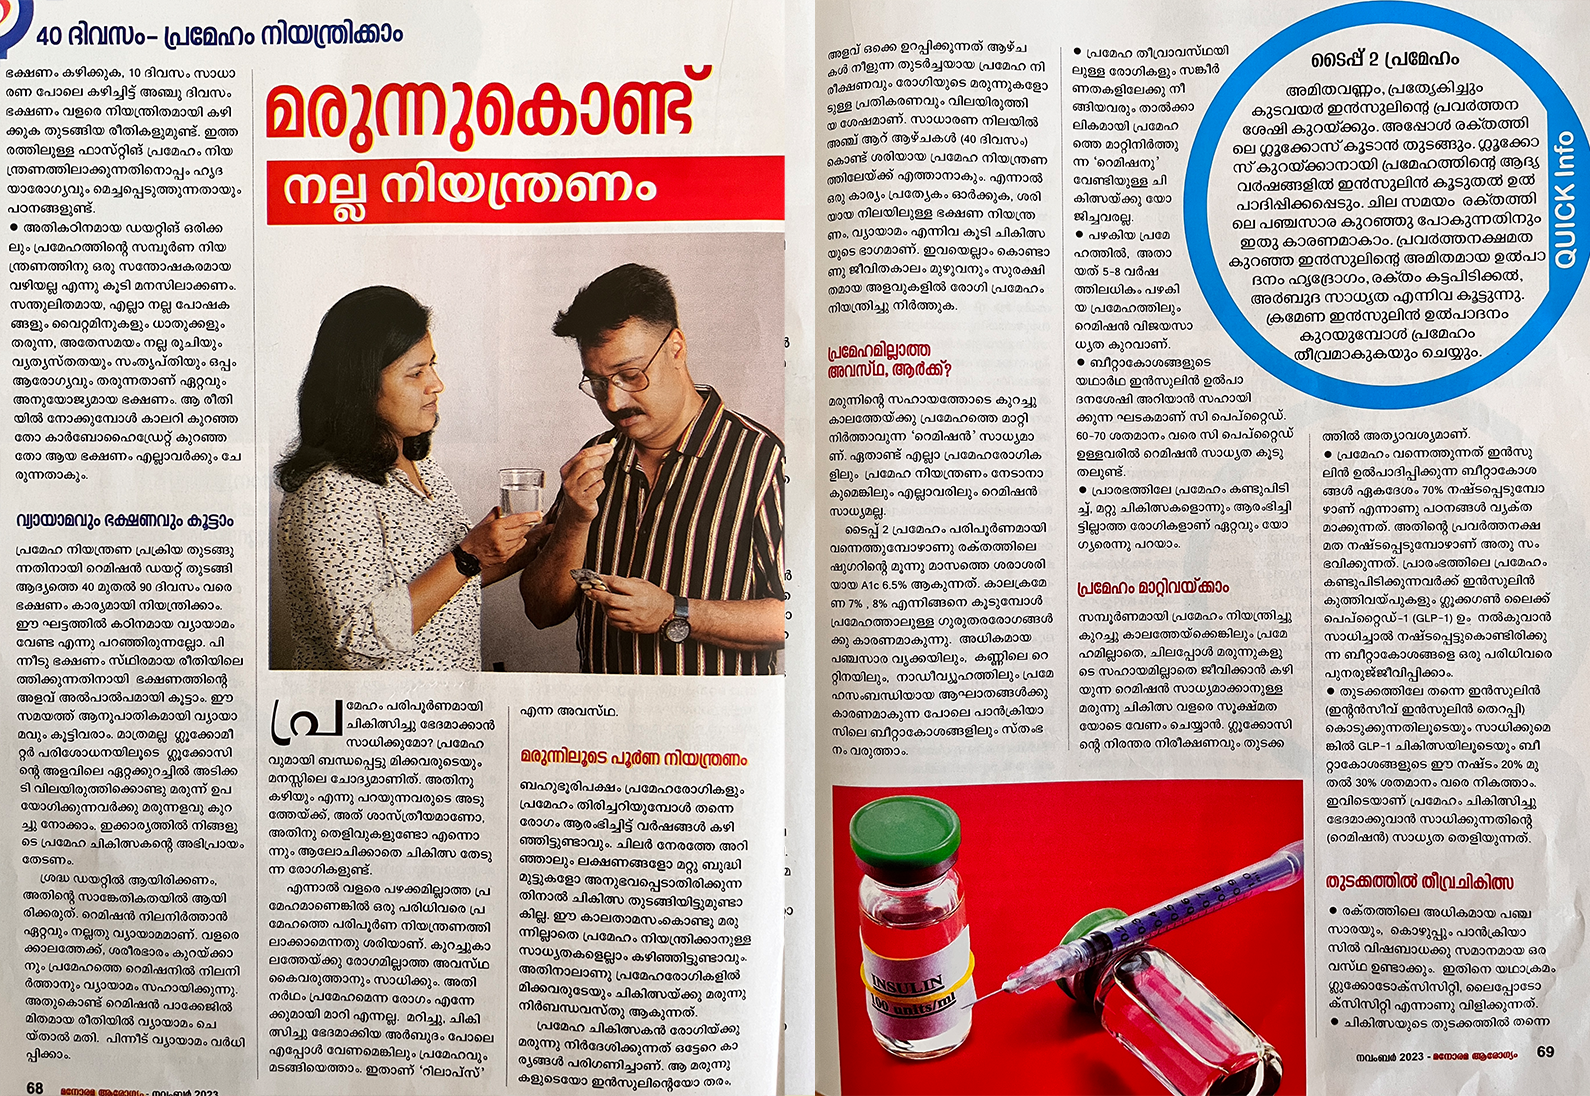 World Diabetes Day Article on Manorama Arogyam Magazine